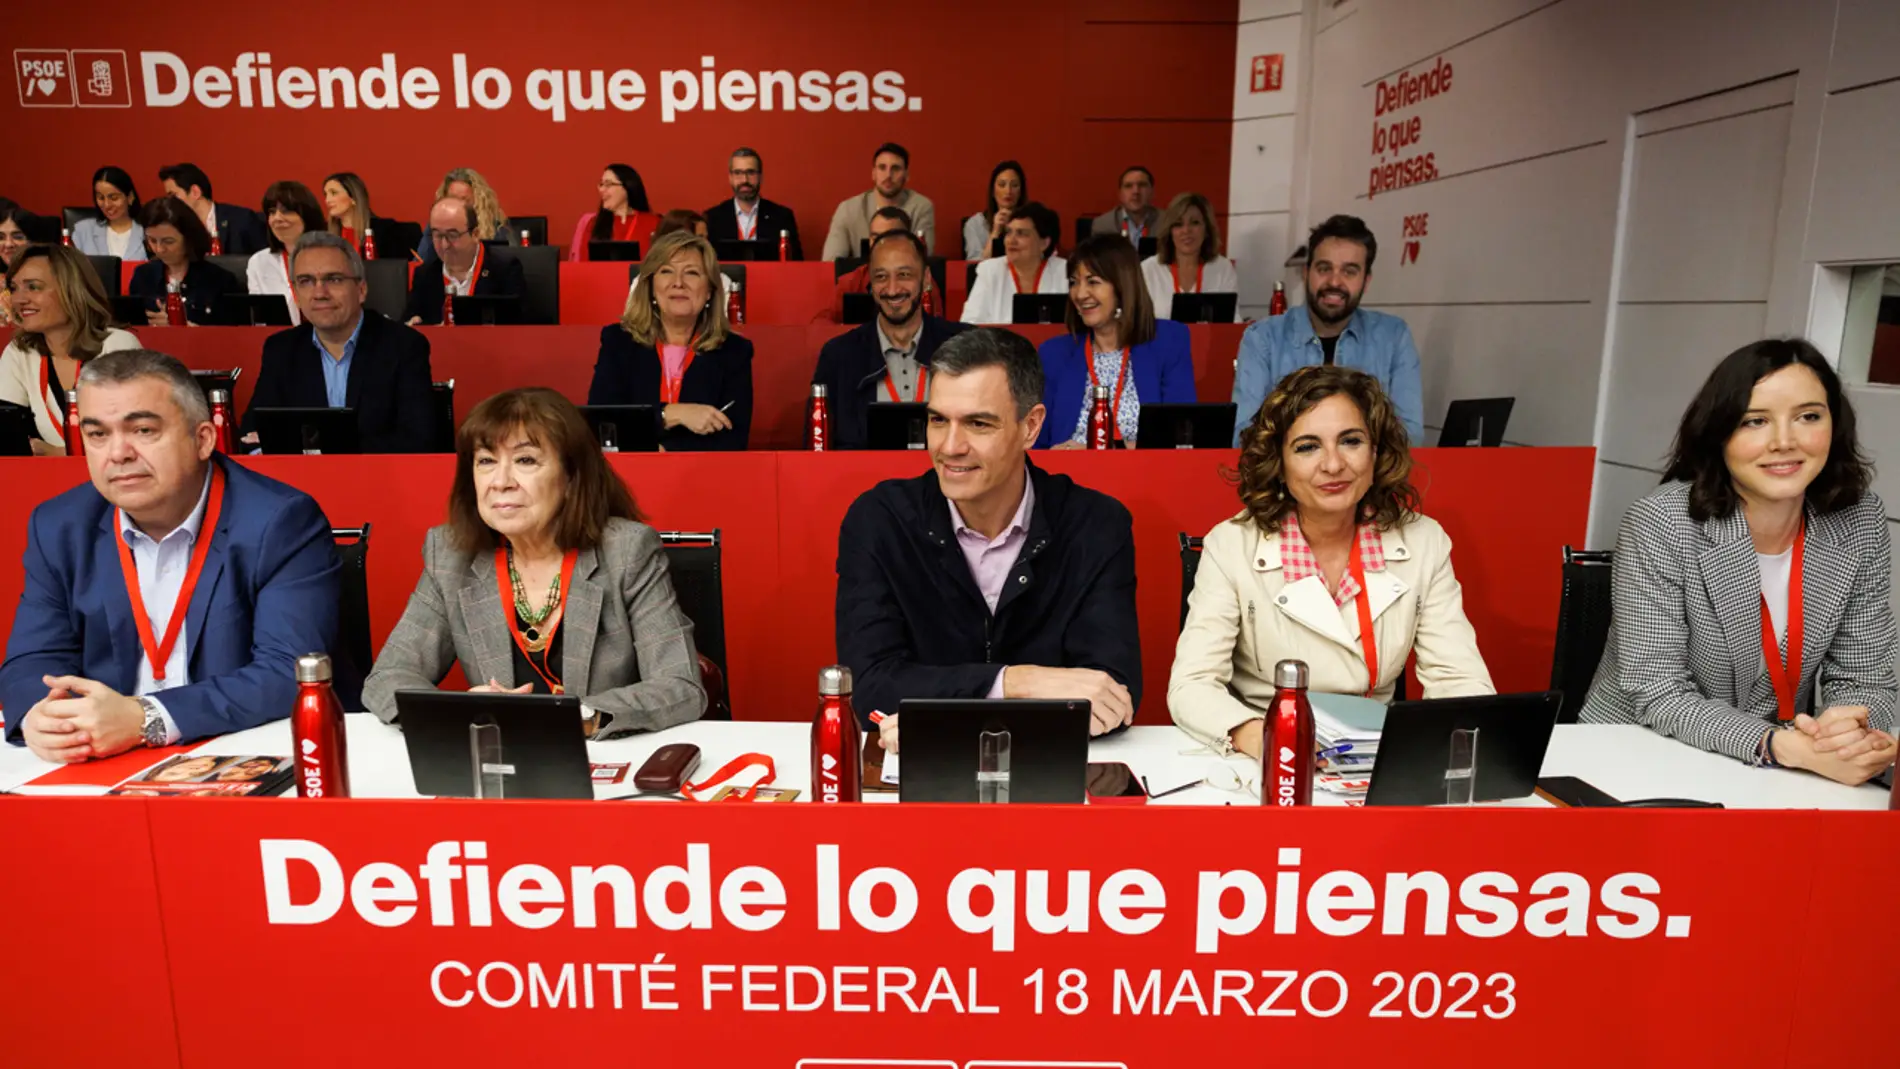 Pedro Sánchez acusa a Feijóo de "acercarse a Vox" con su abstención en la moción de censura